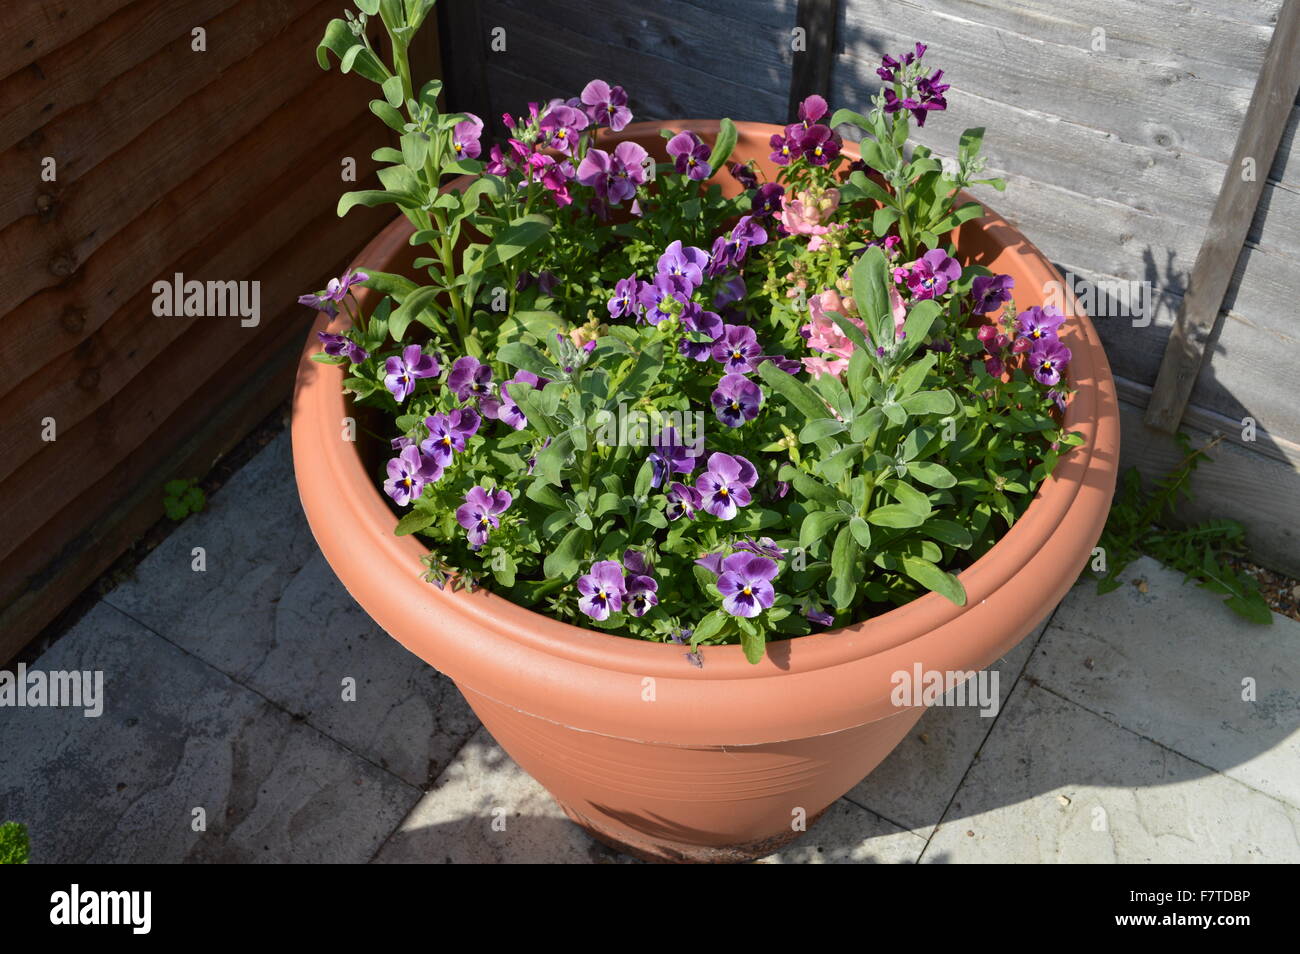 Une plante en pot rempli de fleurs violettes dans un jardin Photo Stock -  Alamy